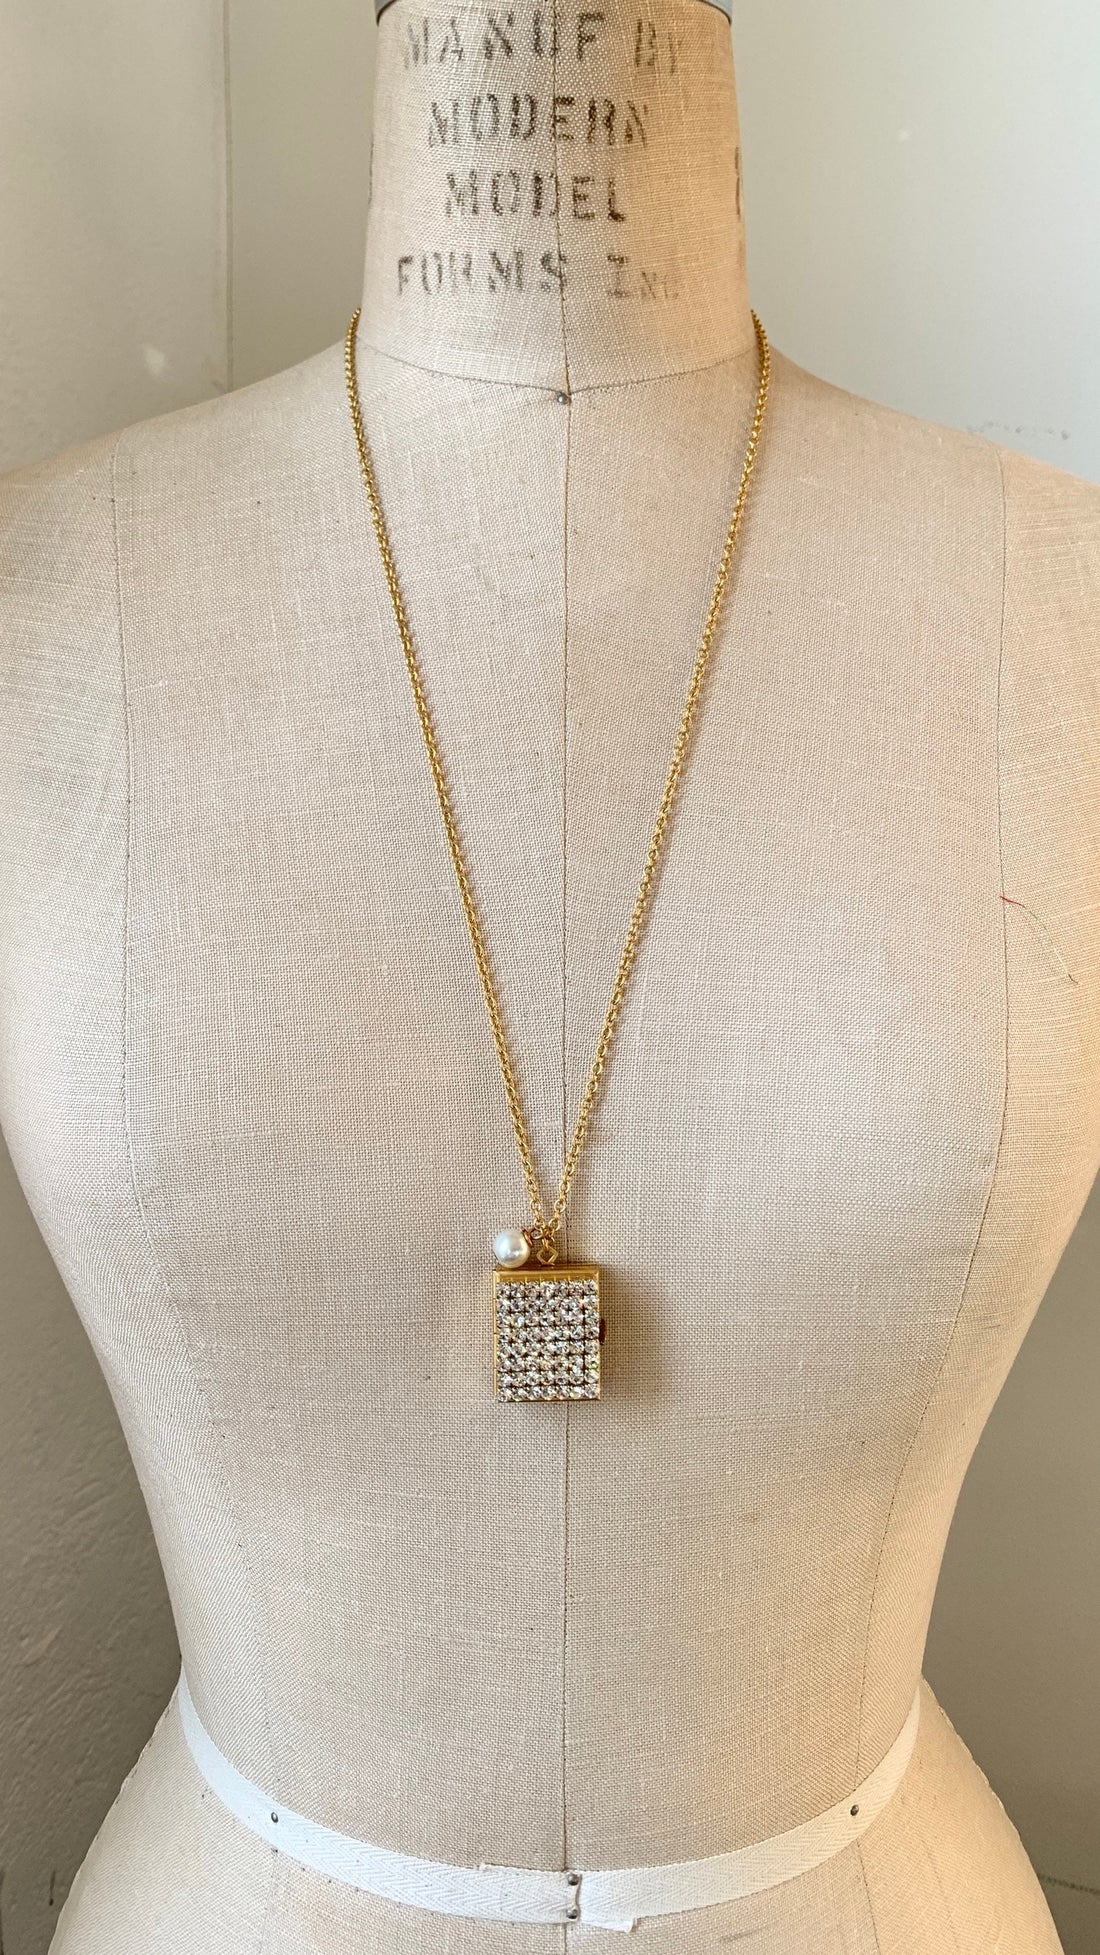 Lenora Dame Rhinestone Embellished Expanding Photo Locket Charm Necklace